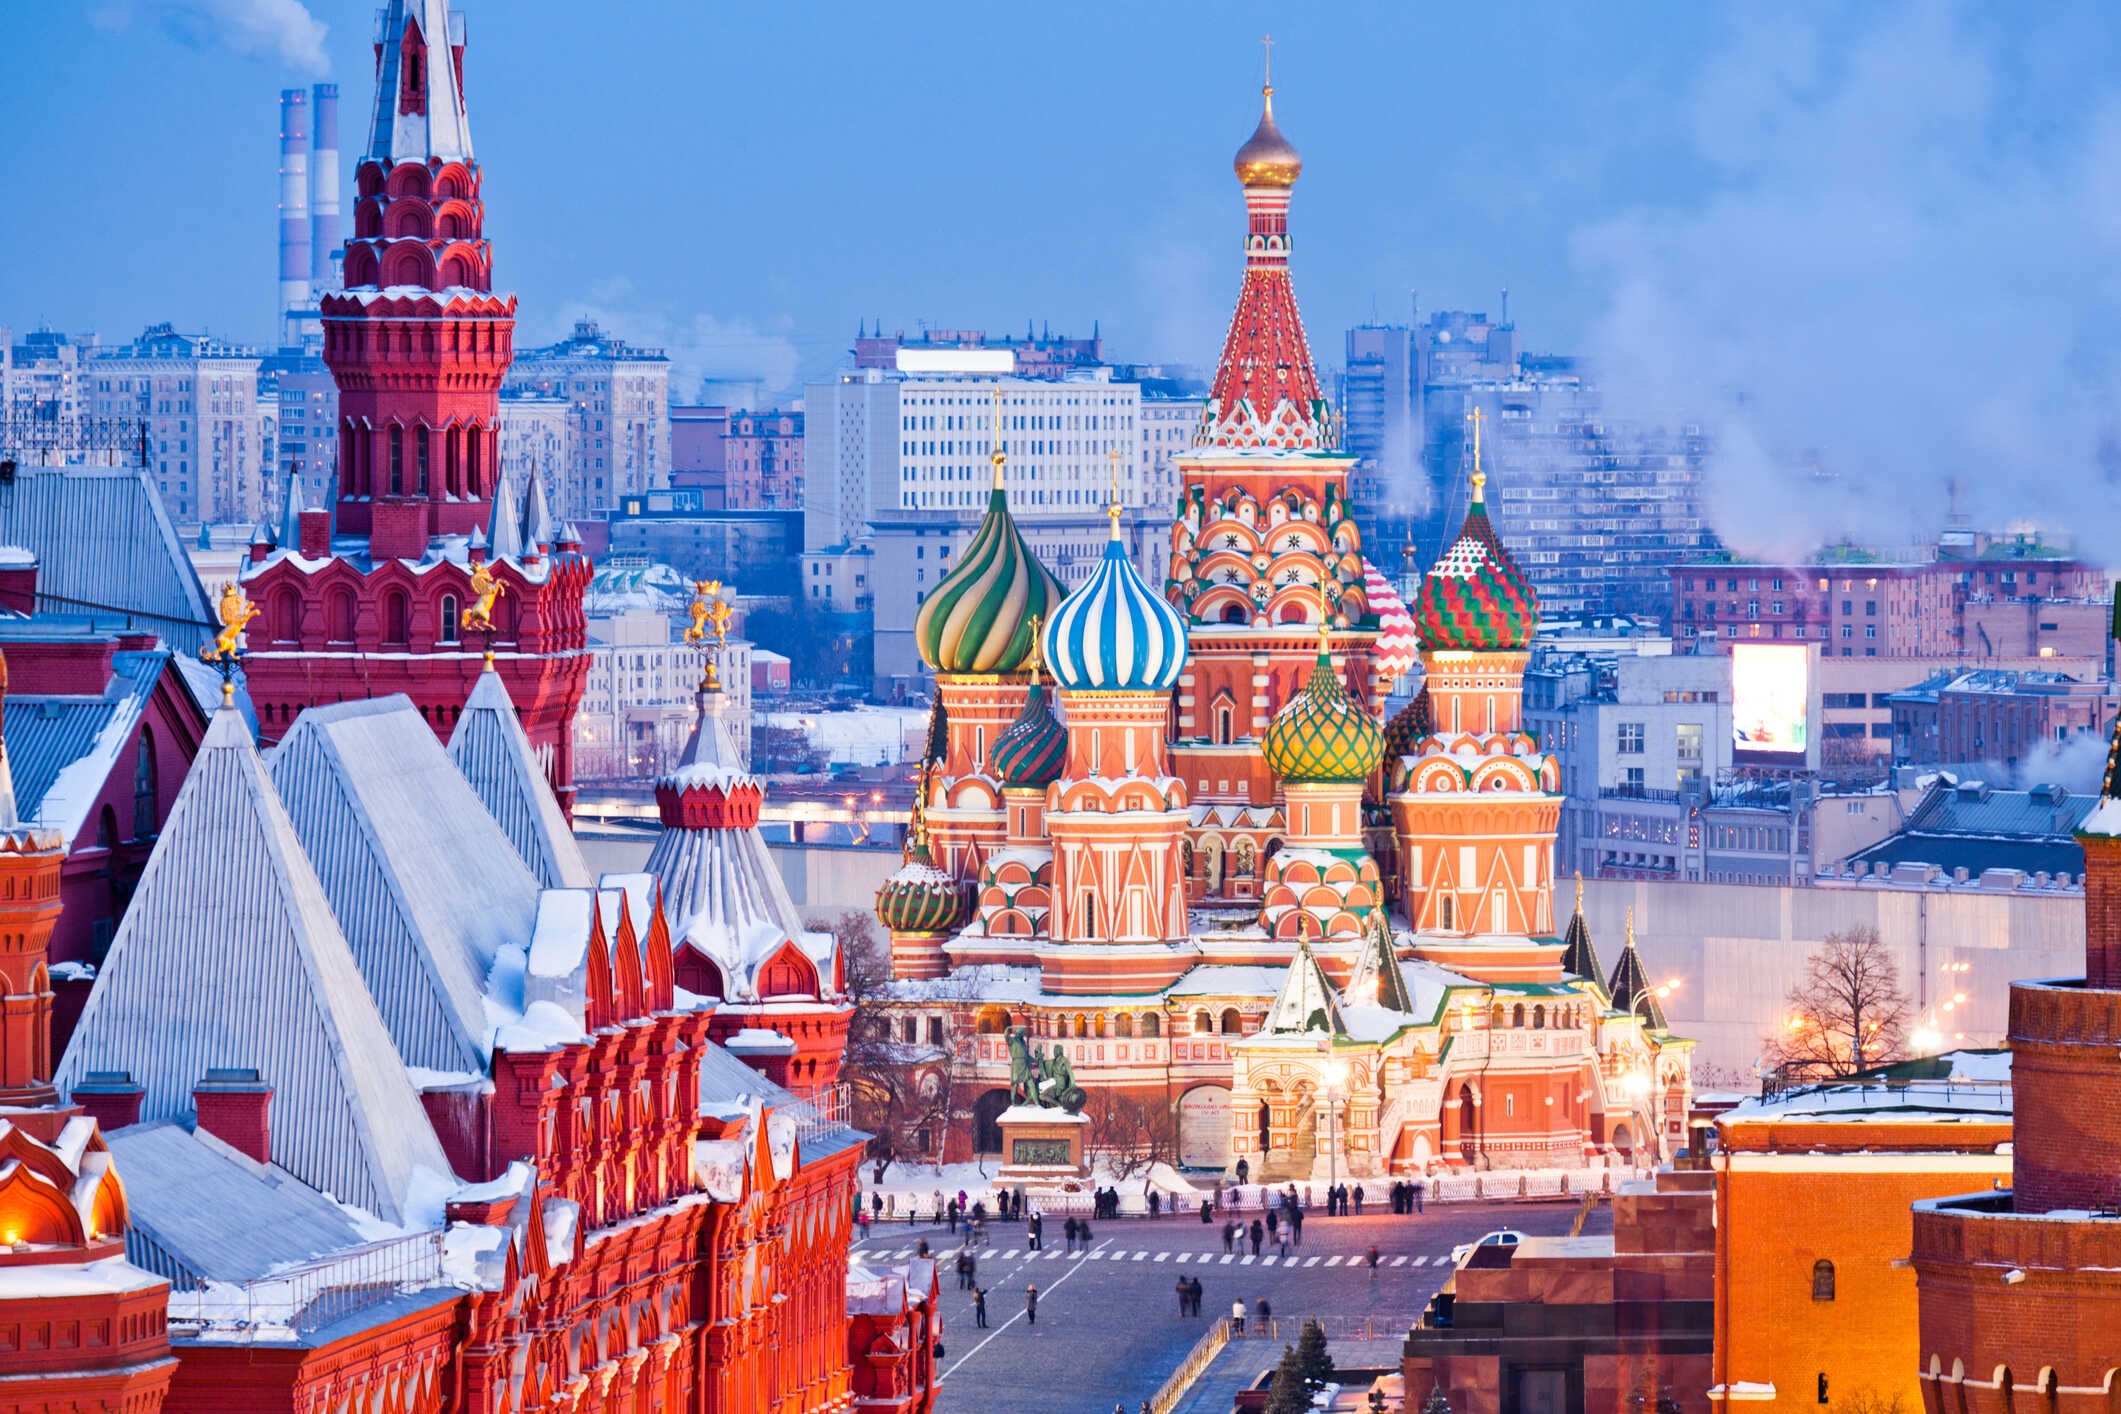 Du lịch Nga - Moscow - ST Petersburg mùa đêm trắng từ Sài Gòn giá tốt